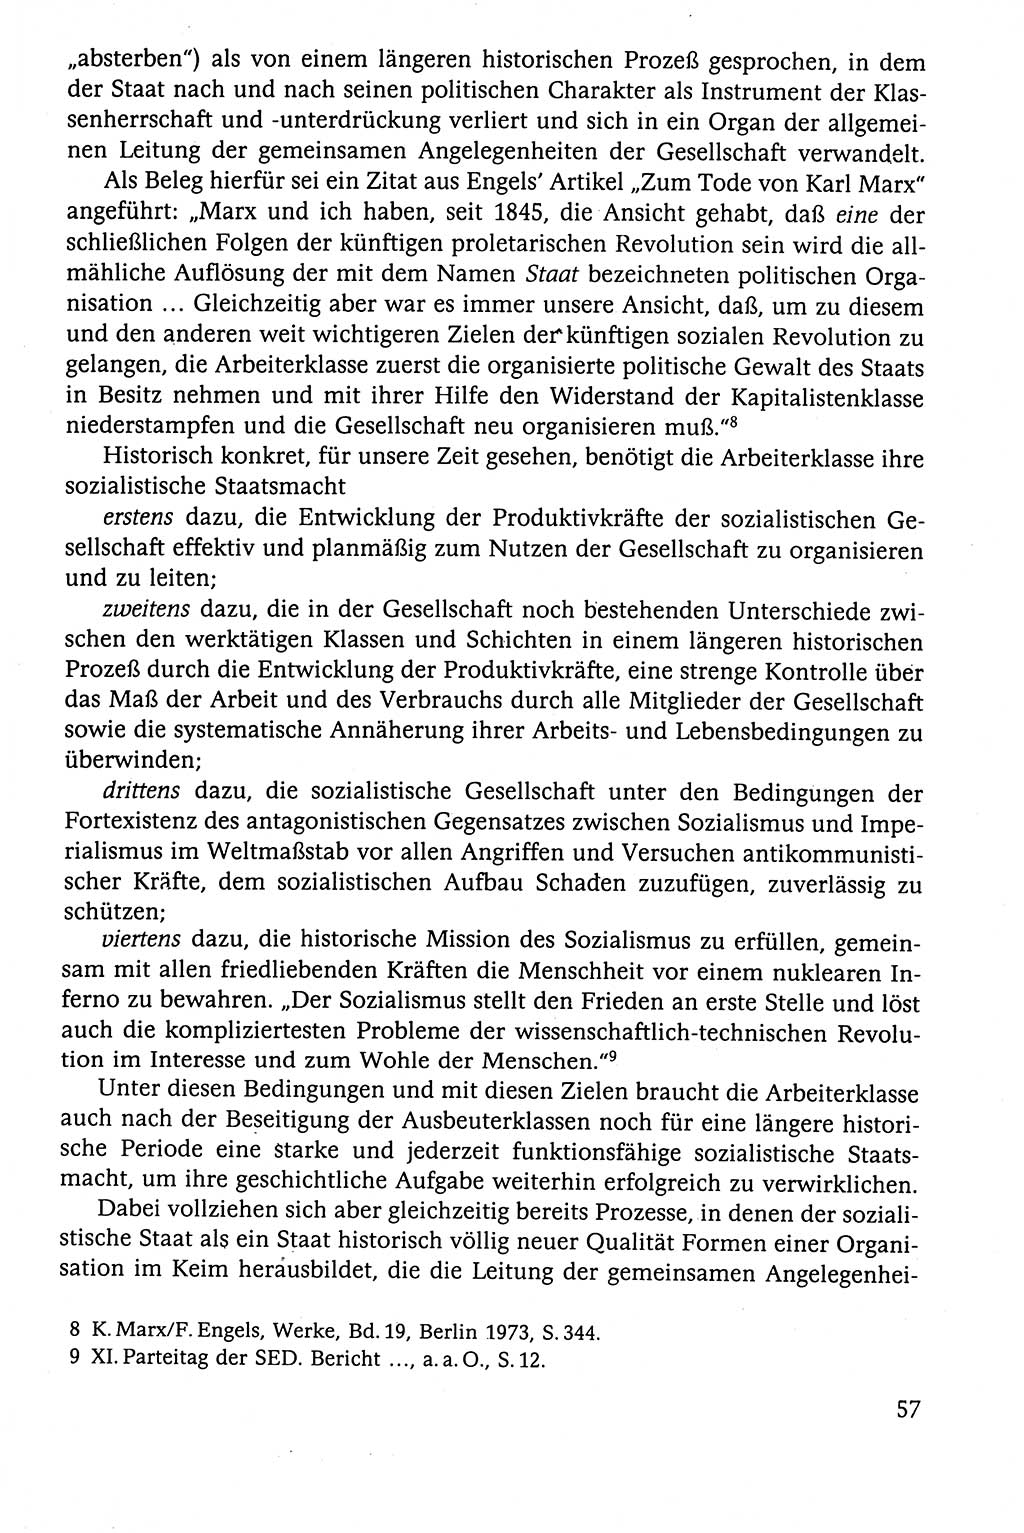 Der Staat im politischen System der DDR (Deutsche Demokratische Republik) 1986, Seite 57 (St. pol. Sys. DDR 1986, S. 57)